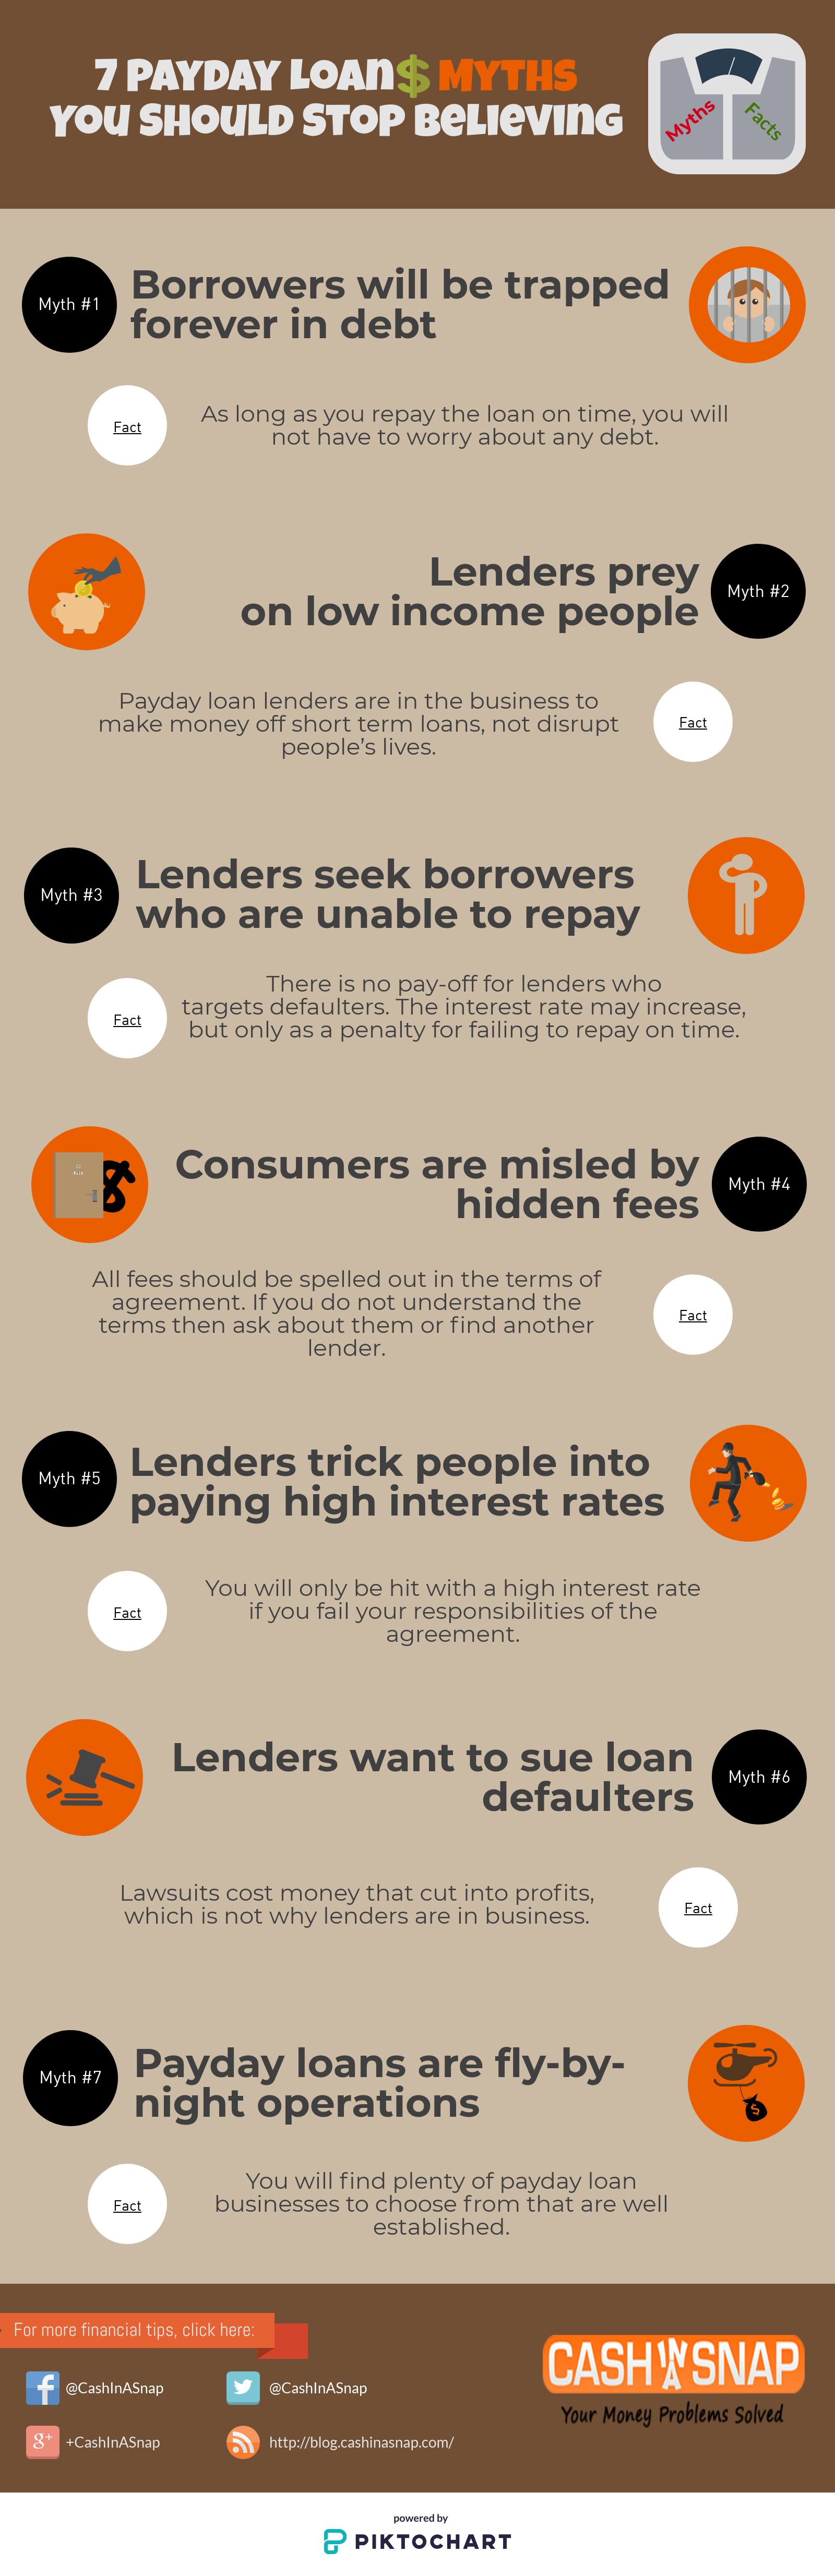 loan myths